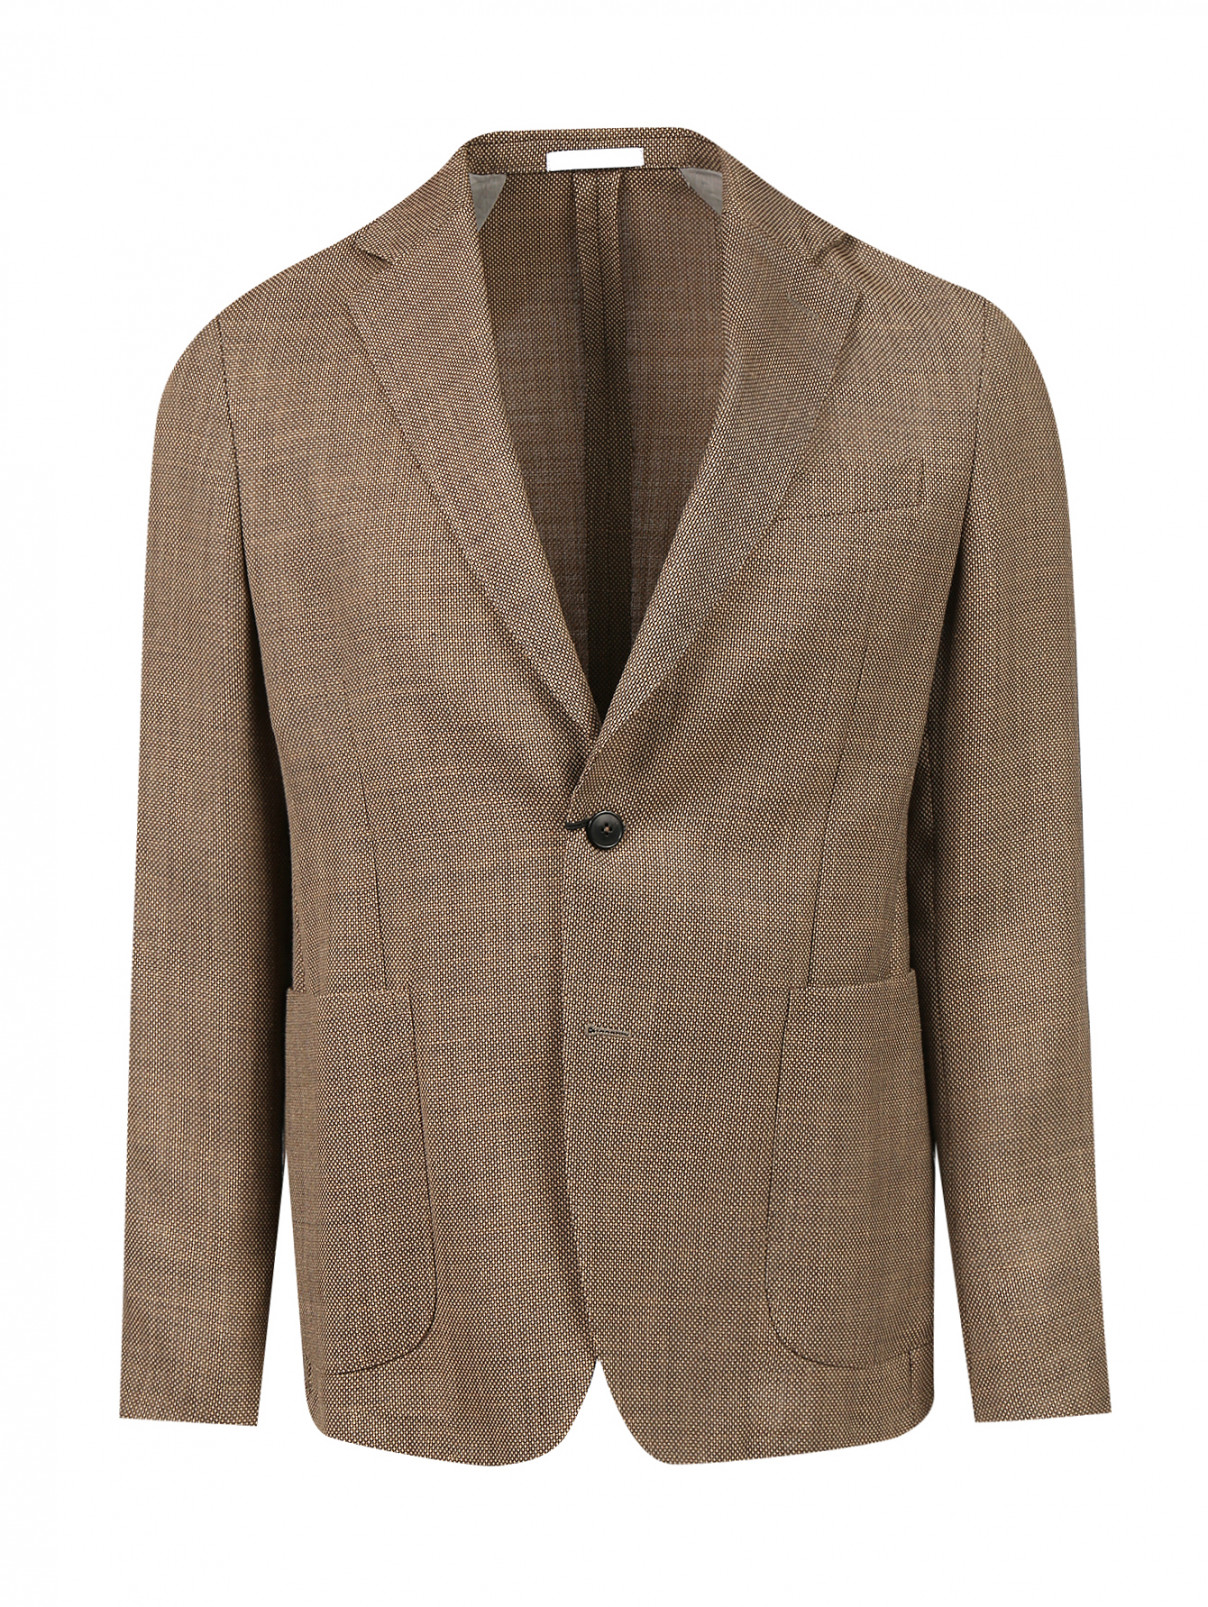 Пиджак однобортный из шерсти Pal Zileri  –  Общий вид  – Цвет:  Коричневый